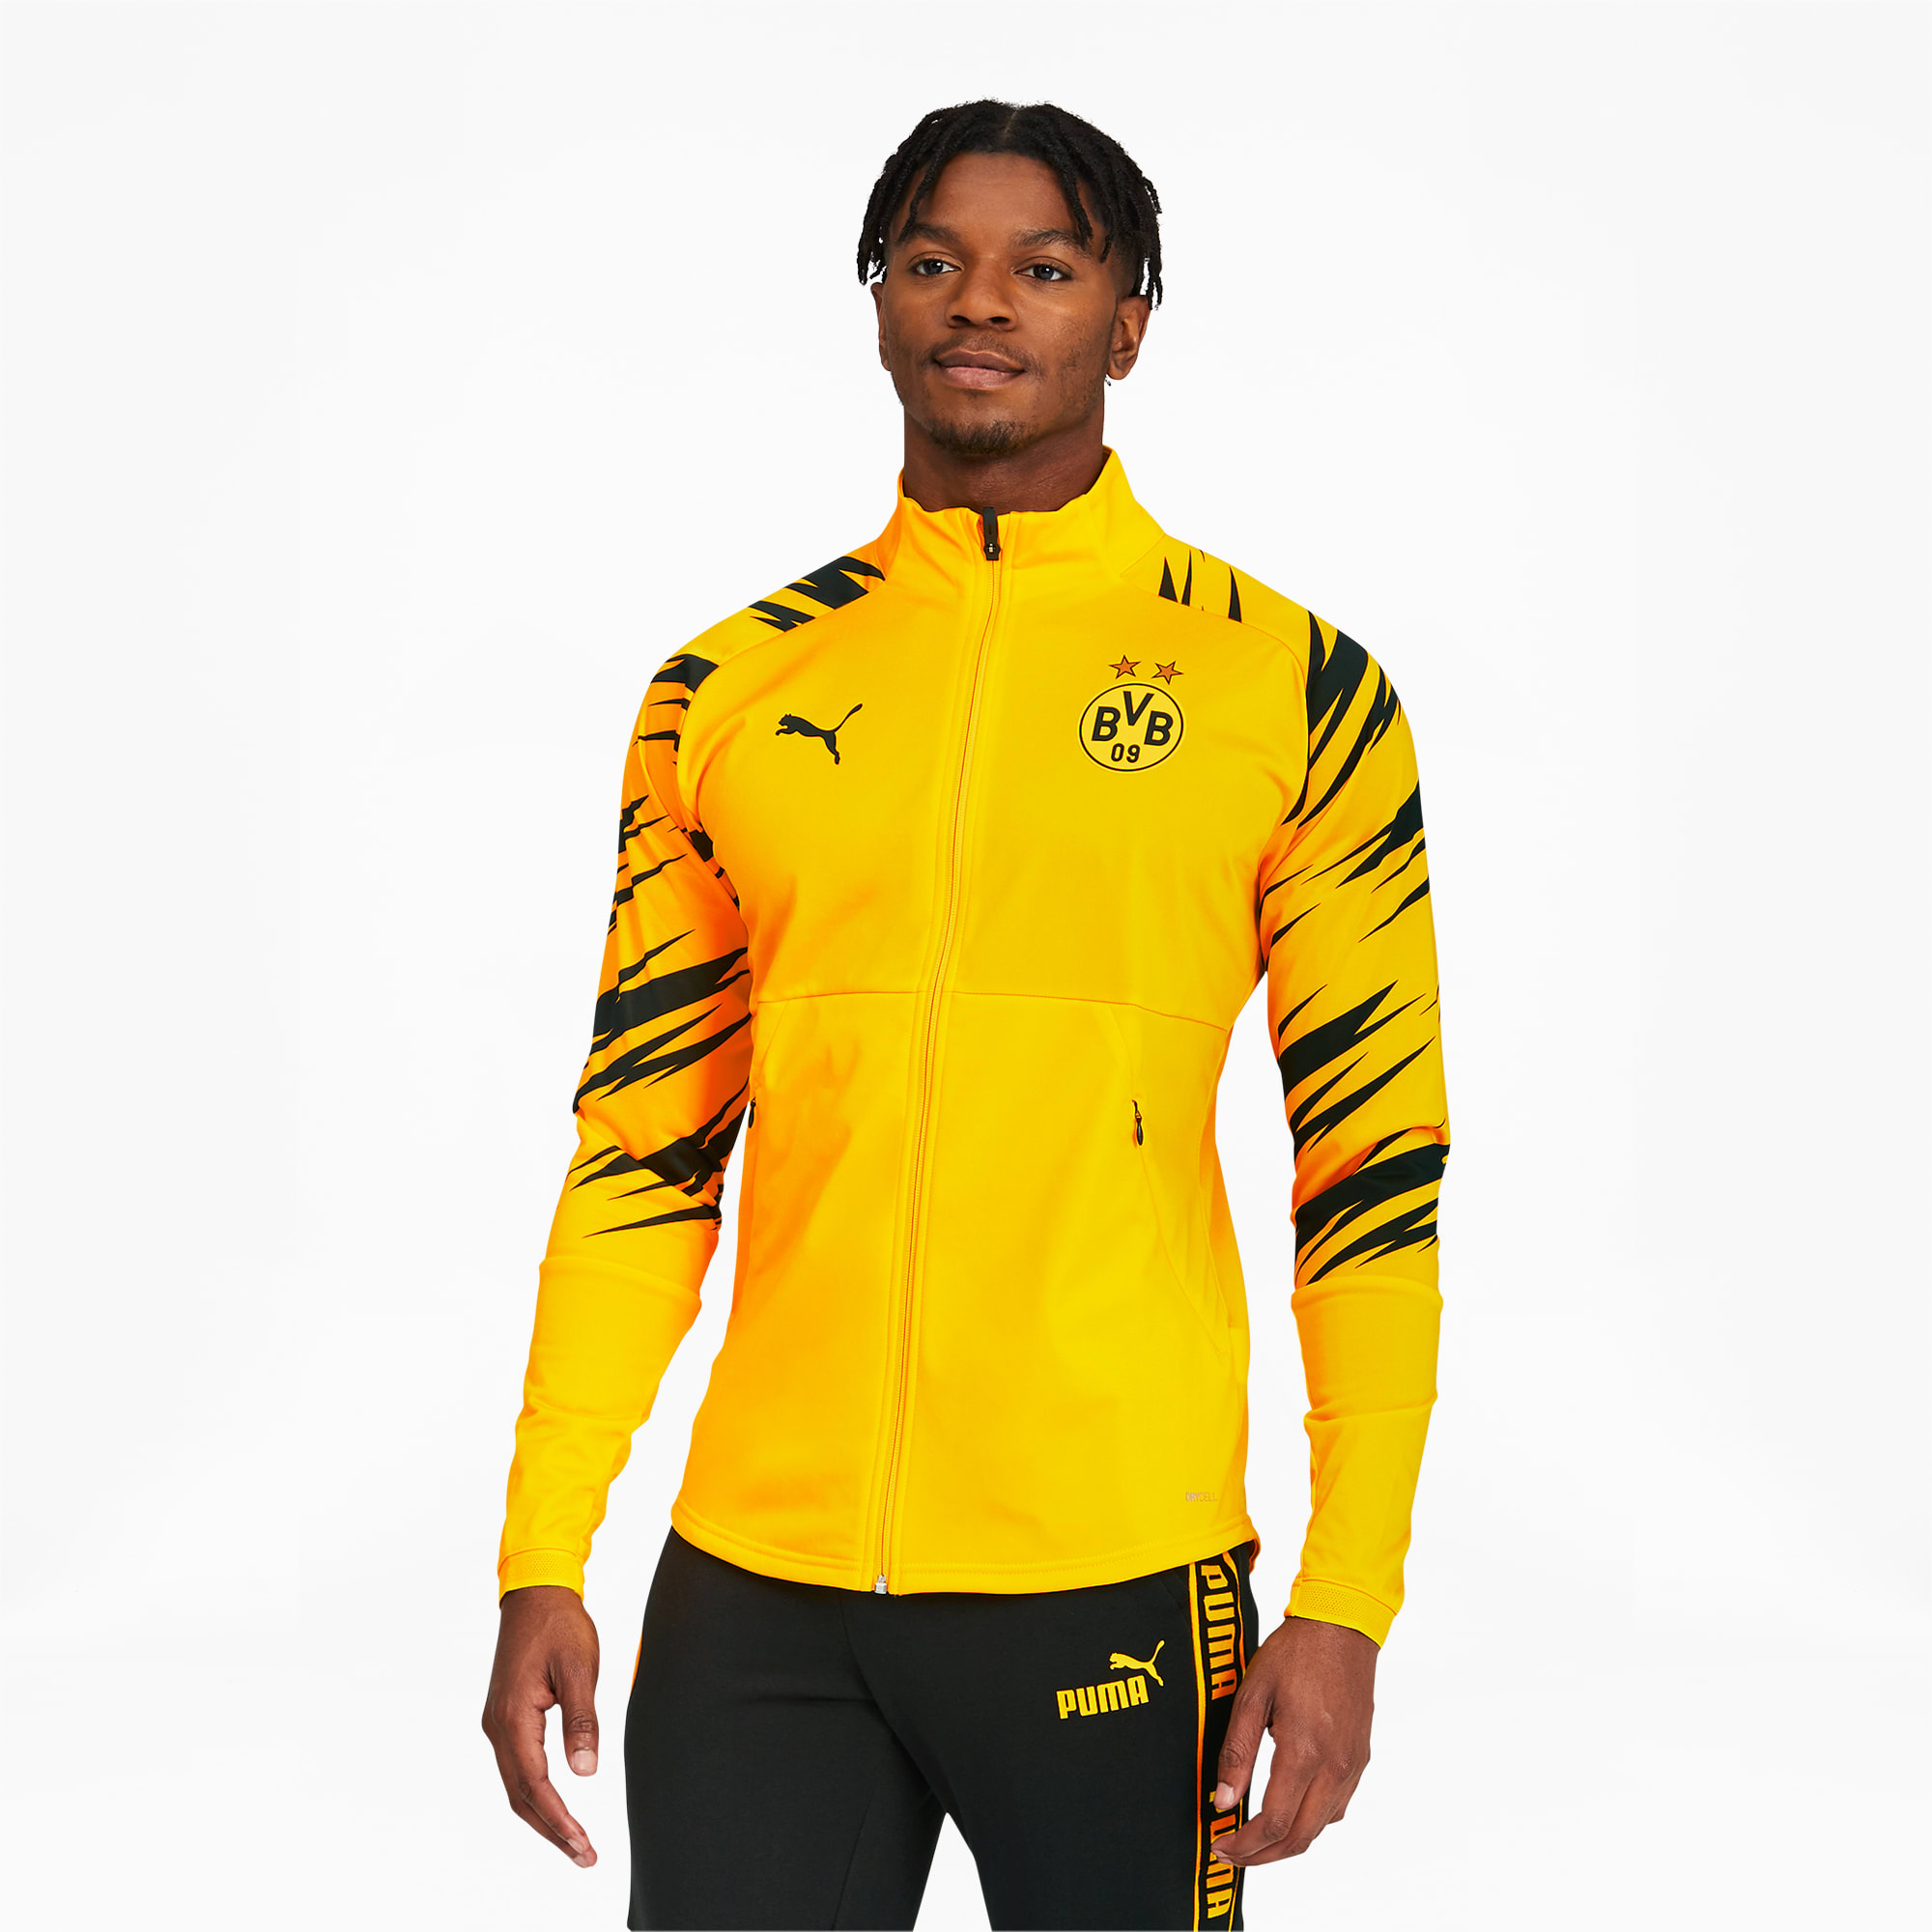 adidas stadium jacket yellow